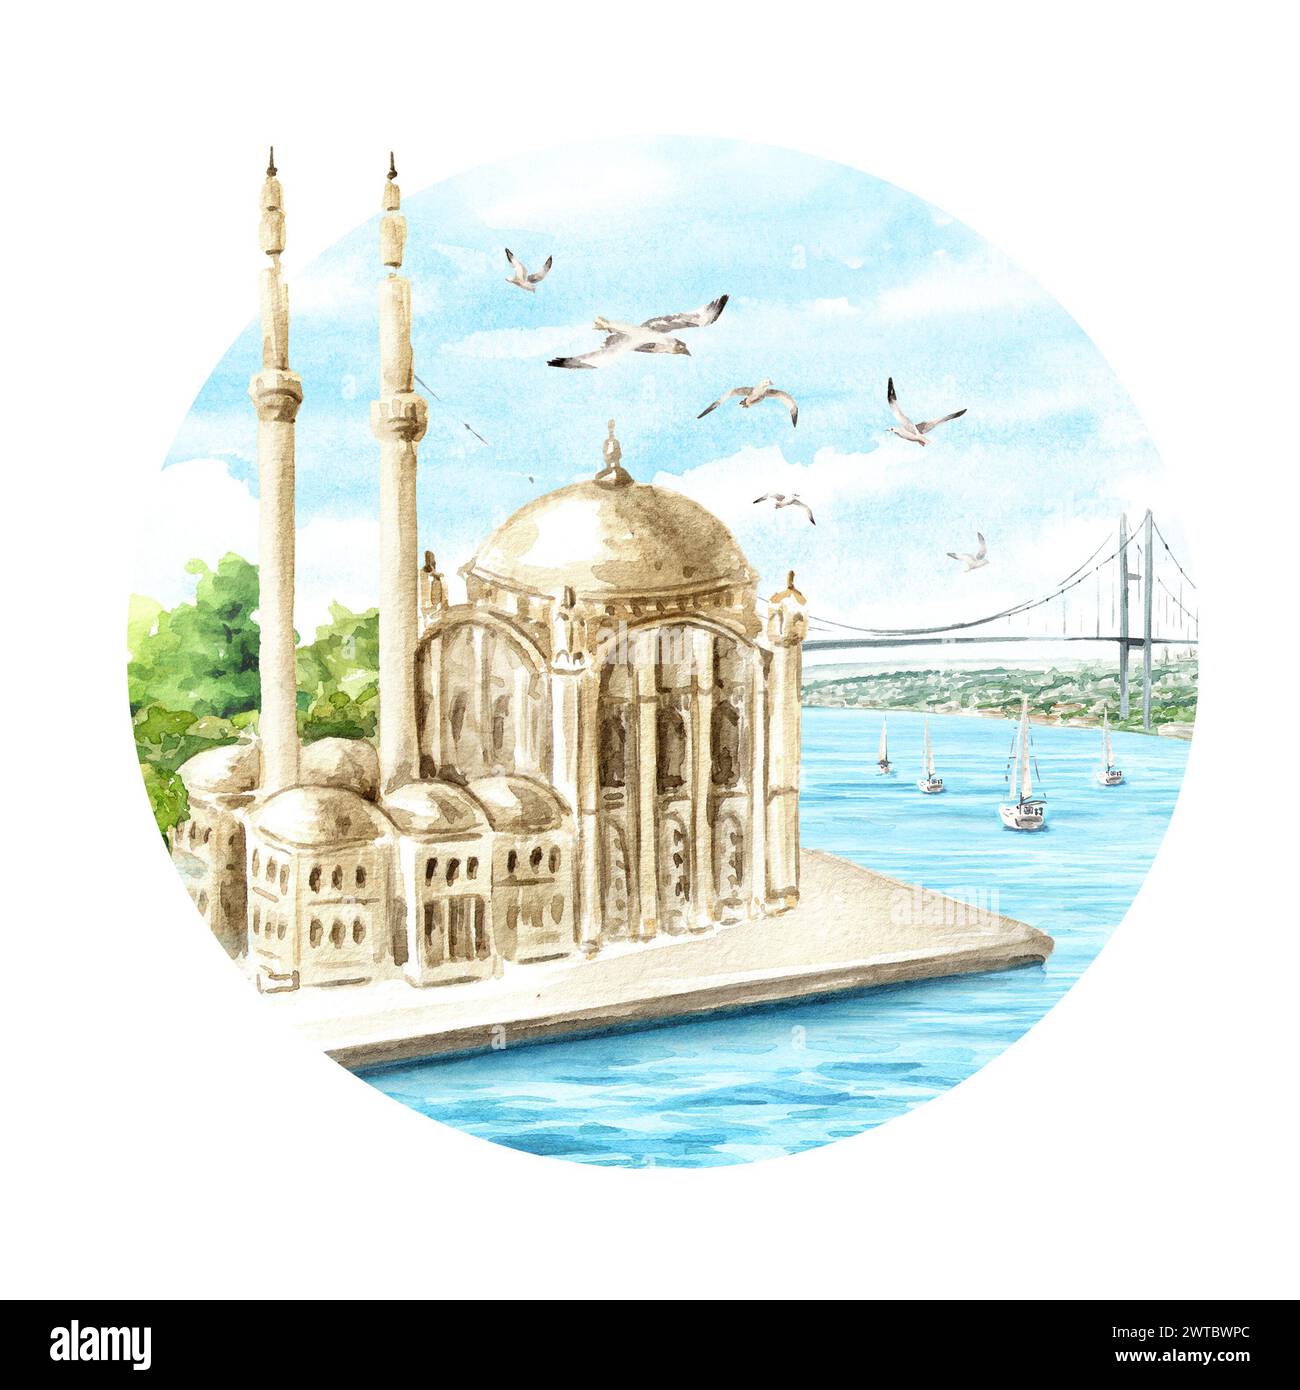 La Moschea di Ortakoy e il ponte sul Bosforo, Istanbul, Turchia. Illustrazione ad acquerello disegnata a mano, isolata su sfondo bianco Foto Stock